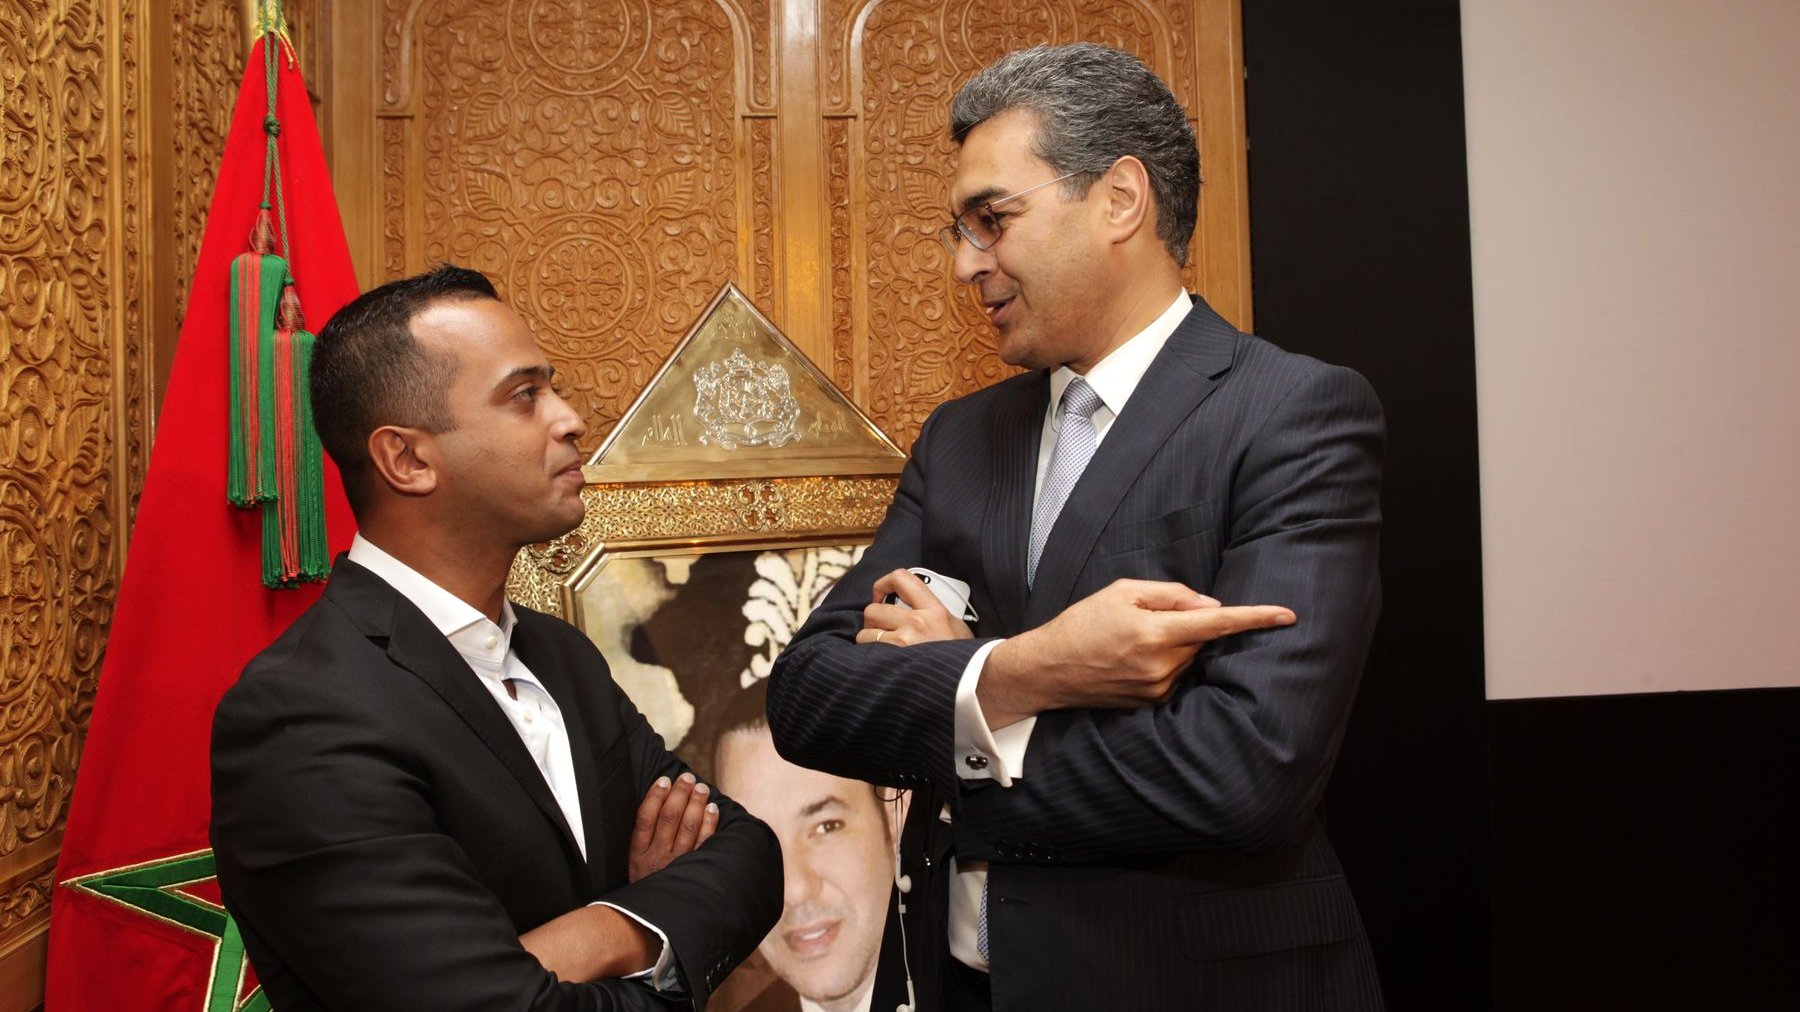 المخرج أنور معتصم في حديث خاص مع عباس العزوزي، المدير العام لقناة "ميدي 1 تيفي"
